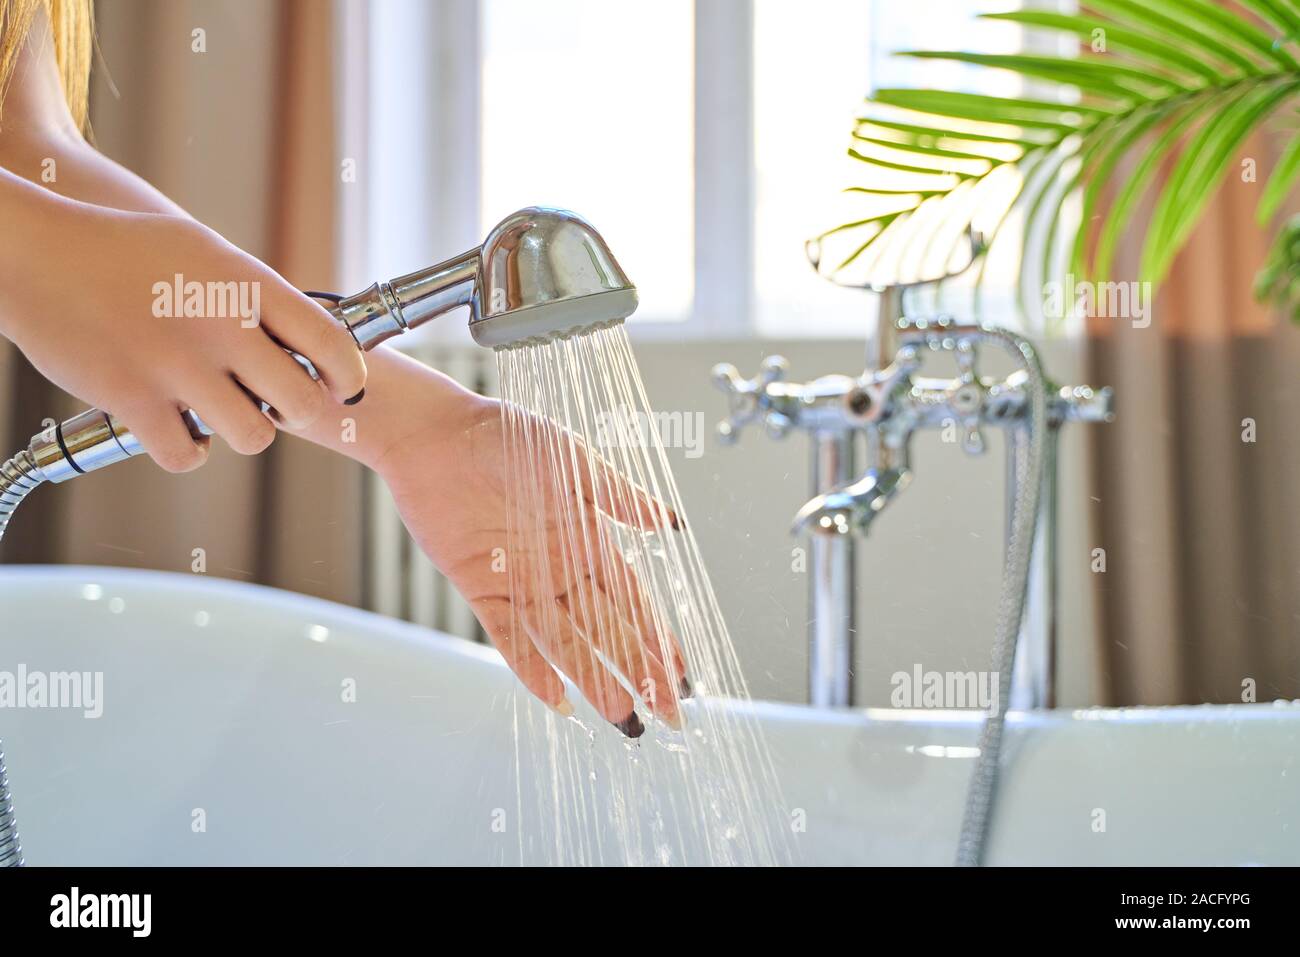 Wasser aus der Dusche auf die Hände des Mädchens. Auf einem blauen  Hintergrund. Frau prüft die Temperatur des Wassers im Hintergrund der  Badezimmer Stockfotografie - Alamy